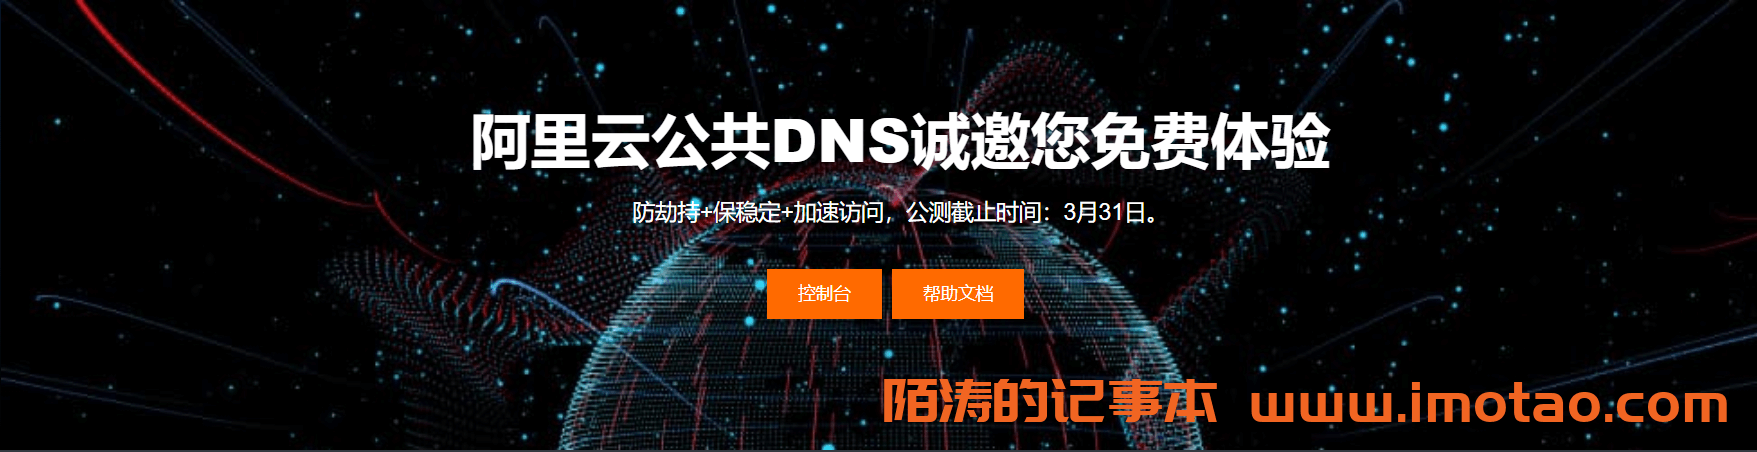 阿里云公共DNS服务正式收费通知